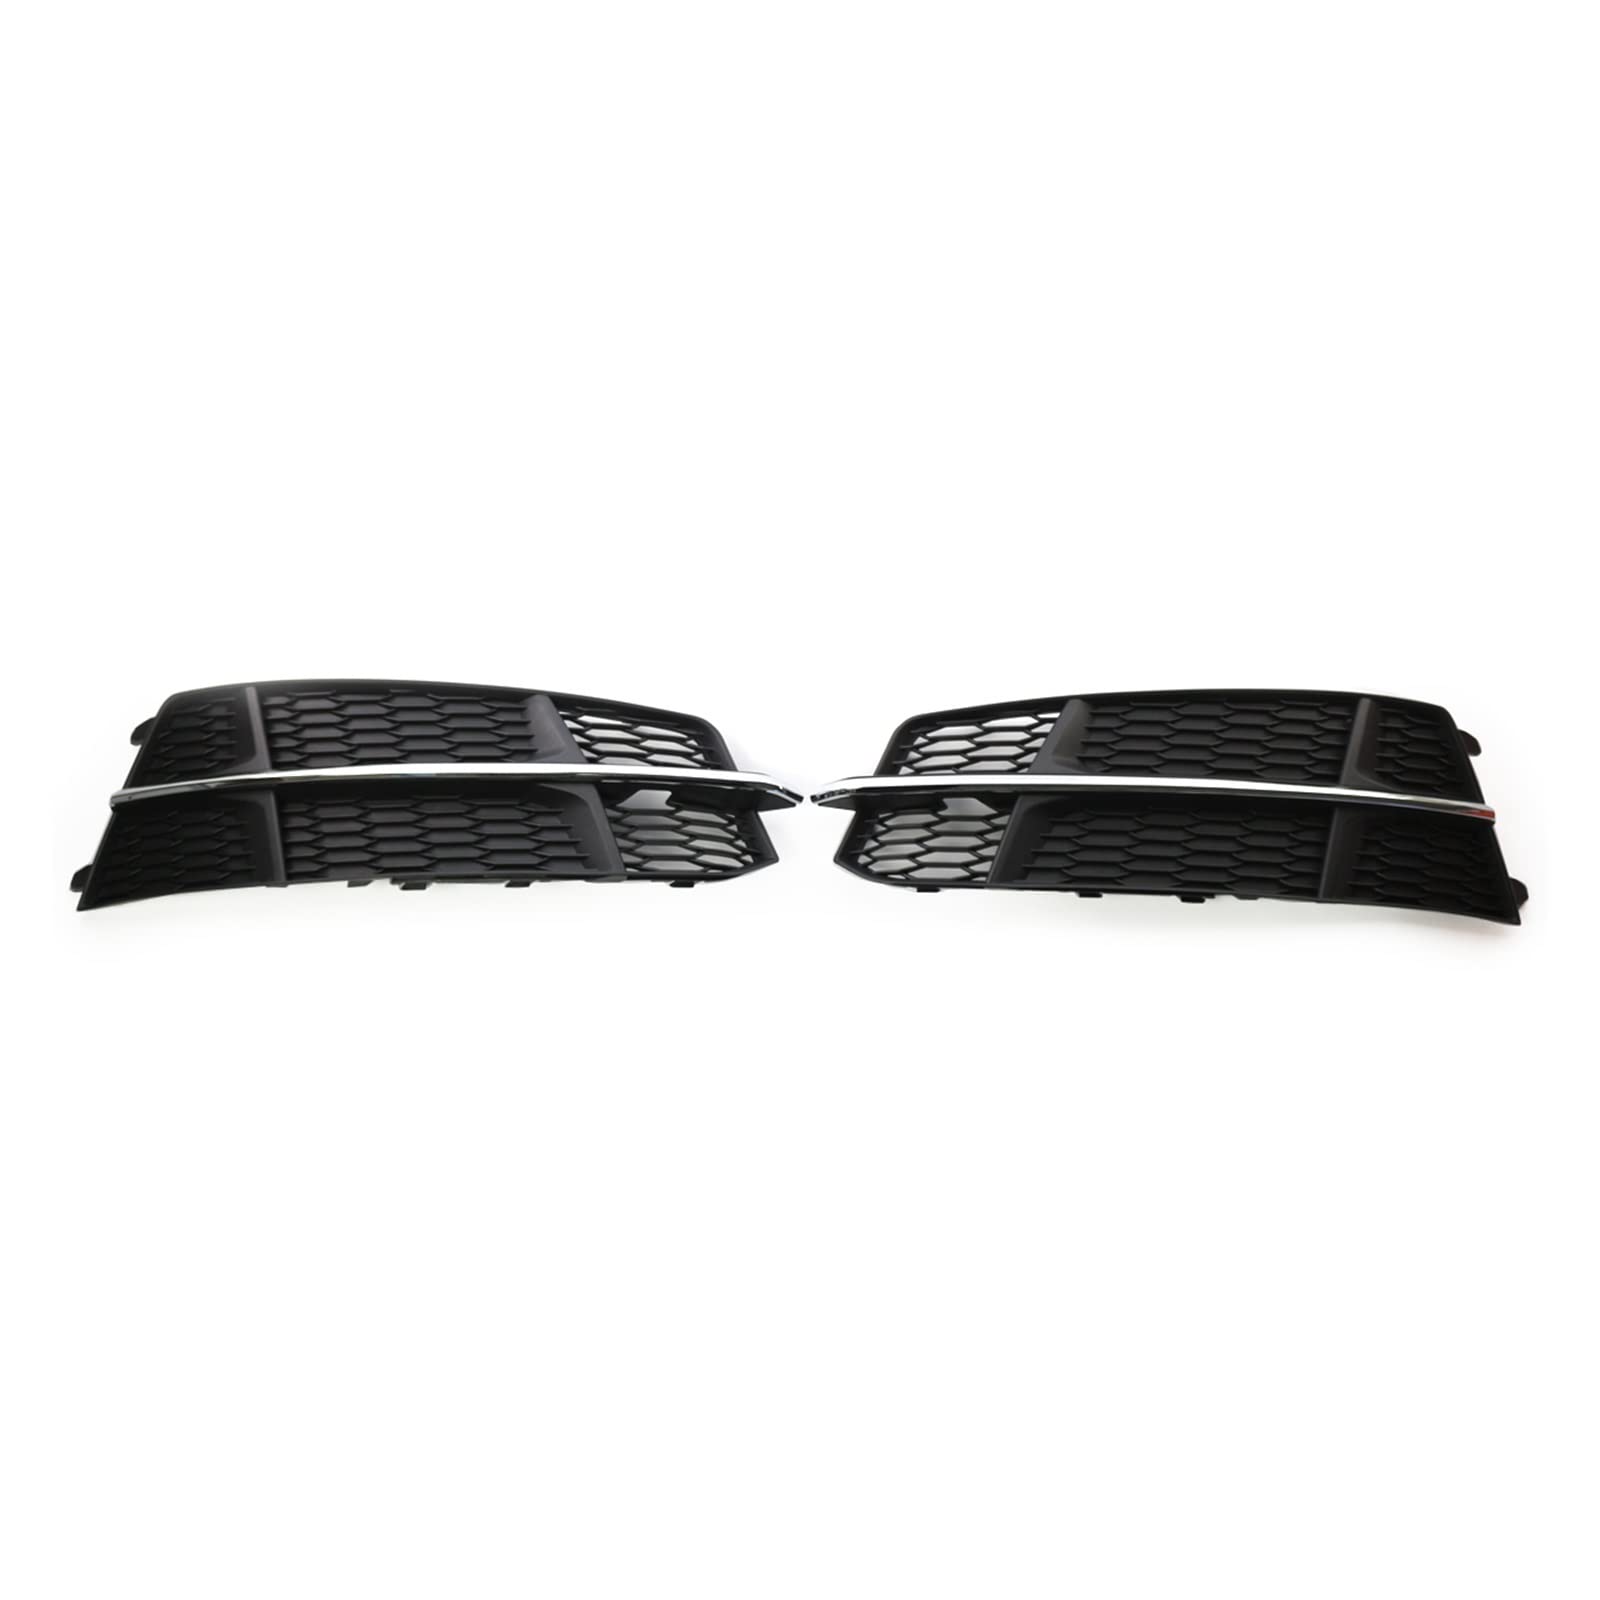 SANTOUXIONG 1 Paar linke rechte Seite vorne Stoßstange Nebelscheinwerfer Grill Gitterabdeckung passend for Audi A6 C7 S-LINE 2014–2018 Waben-Hex-Nebelscheinwerfer-Grills Nebelscheinwerfergrill von SANTOUXIONG